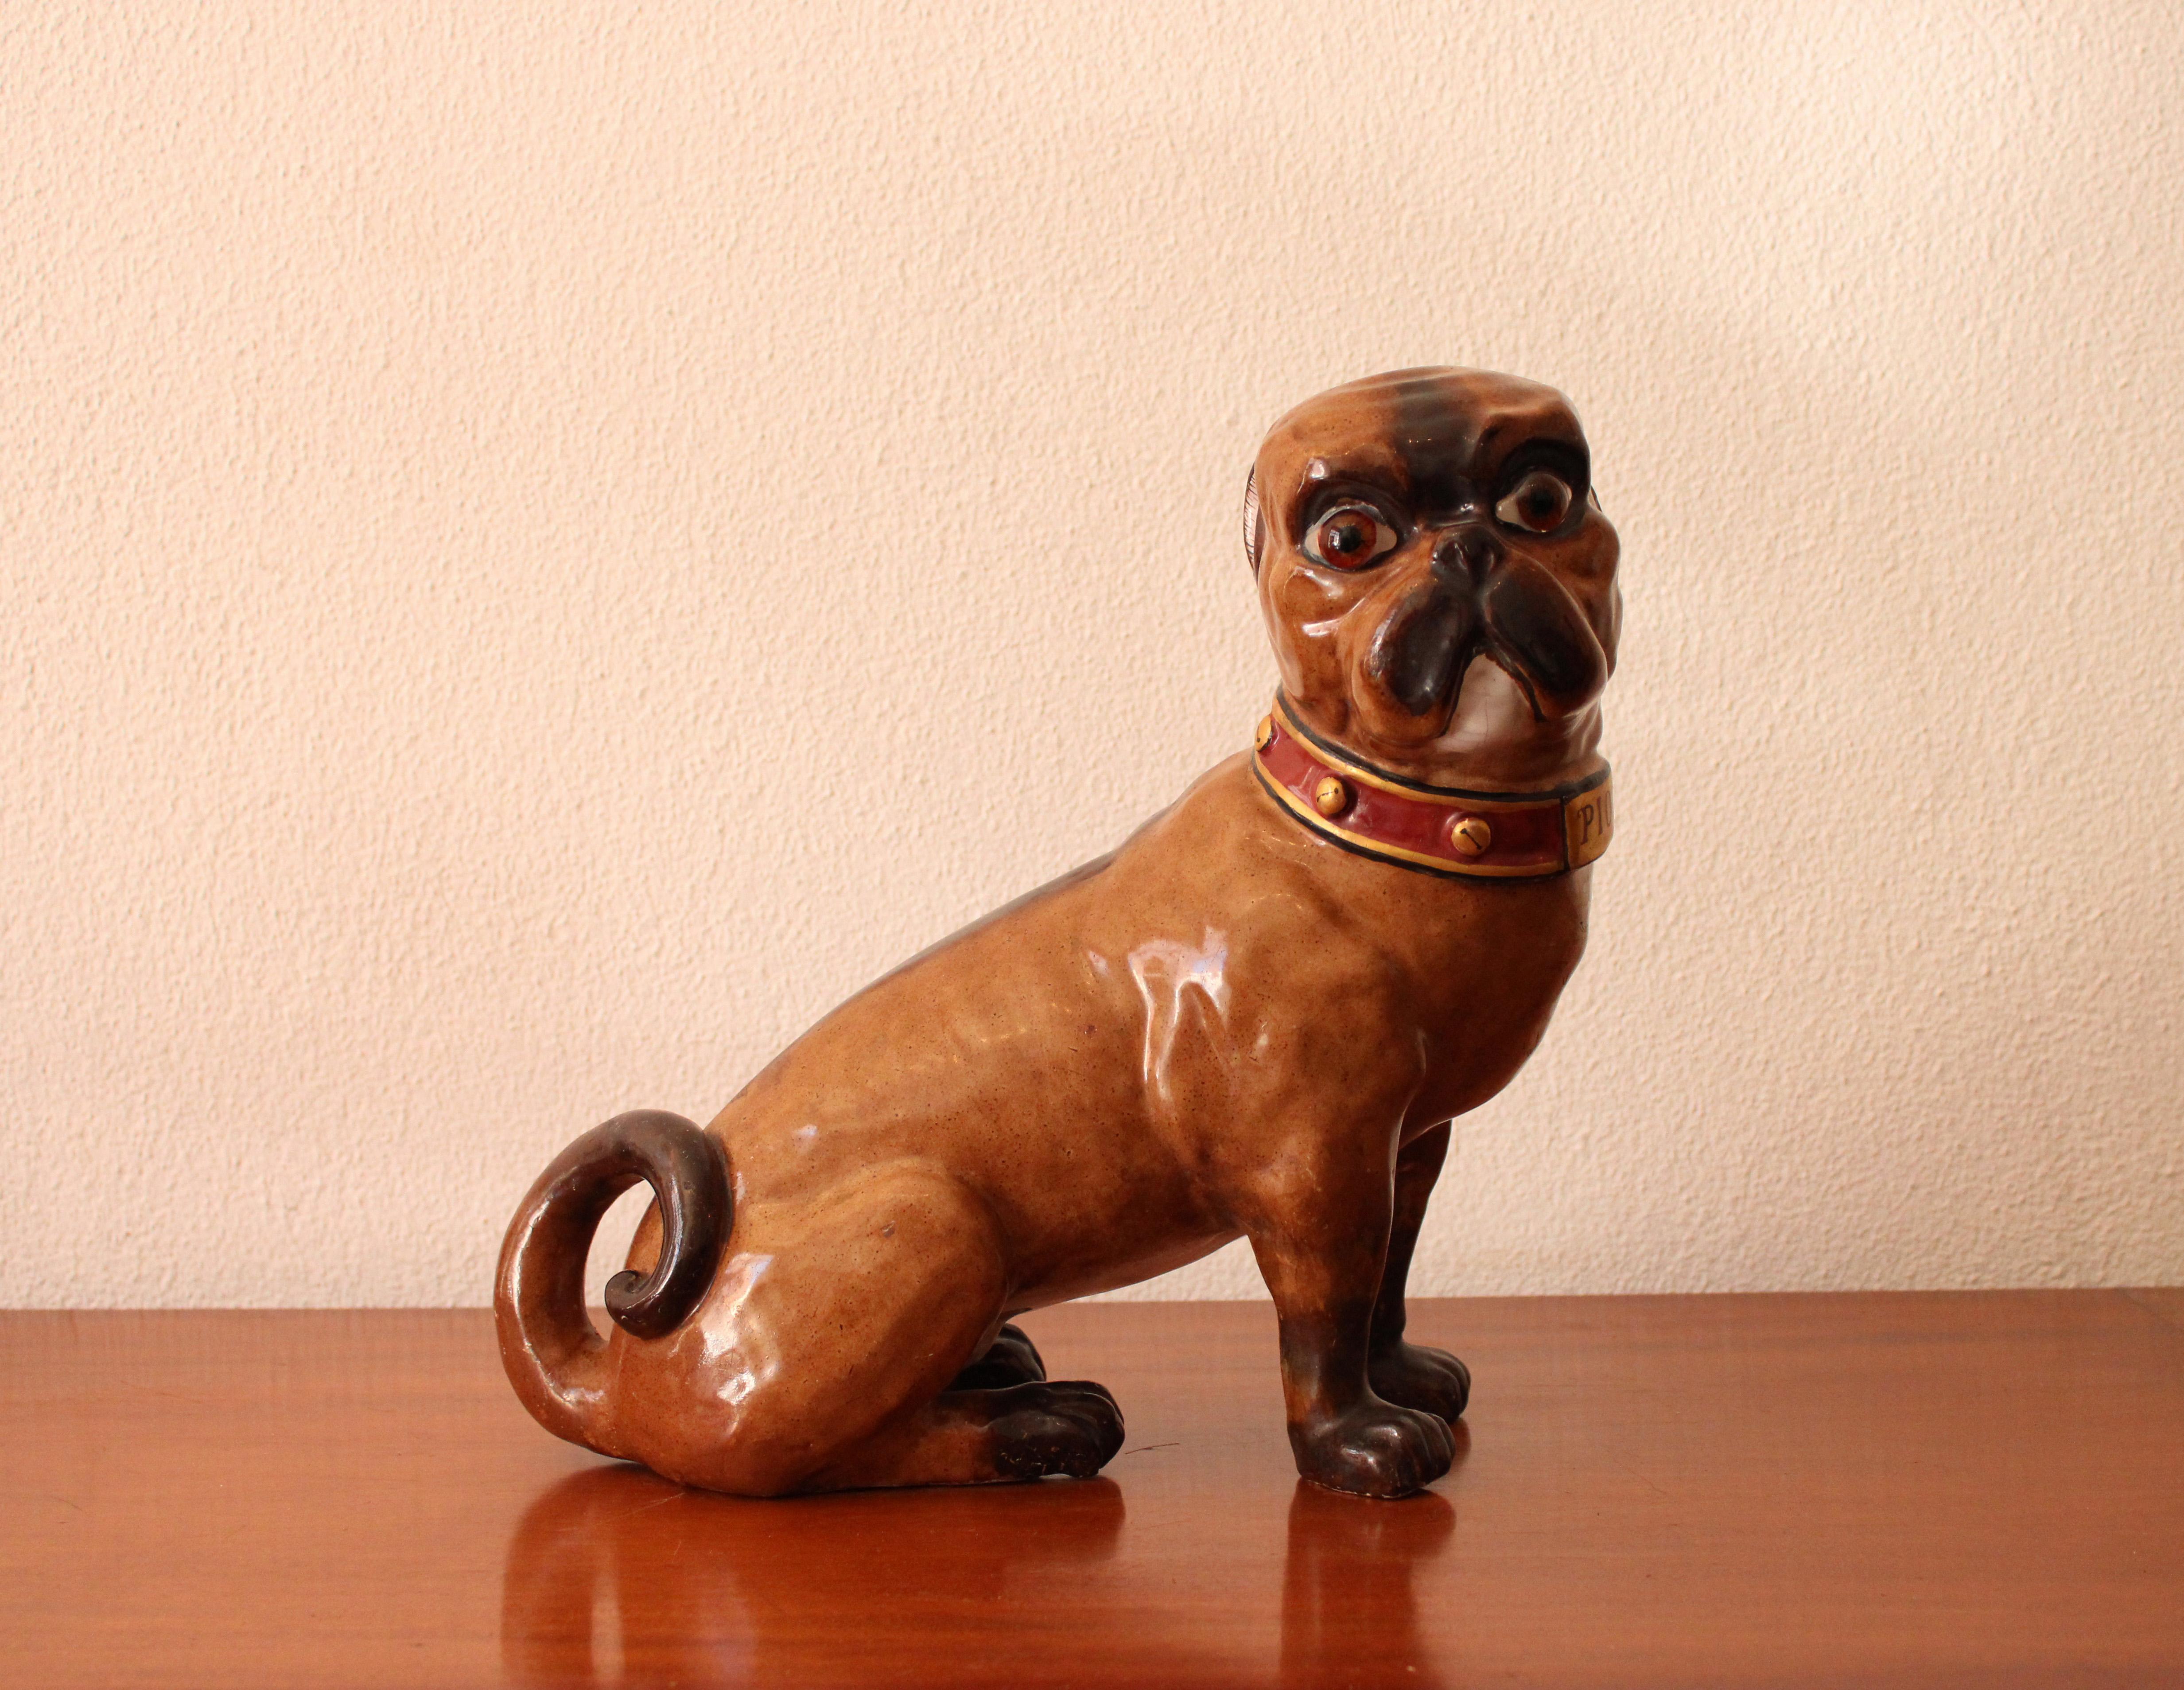 Fayence Hund in verschiedenen Brauntönen verziert, mit Piou Inschrift auf dem Halsband.
Signiert Emille Gallé.